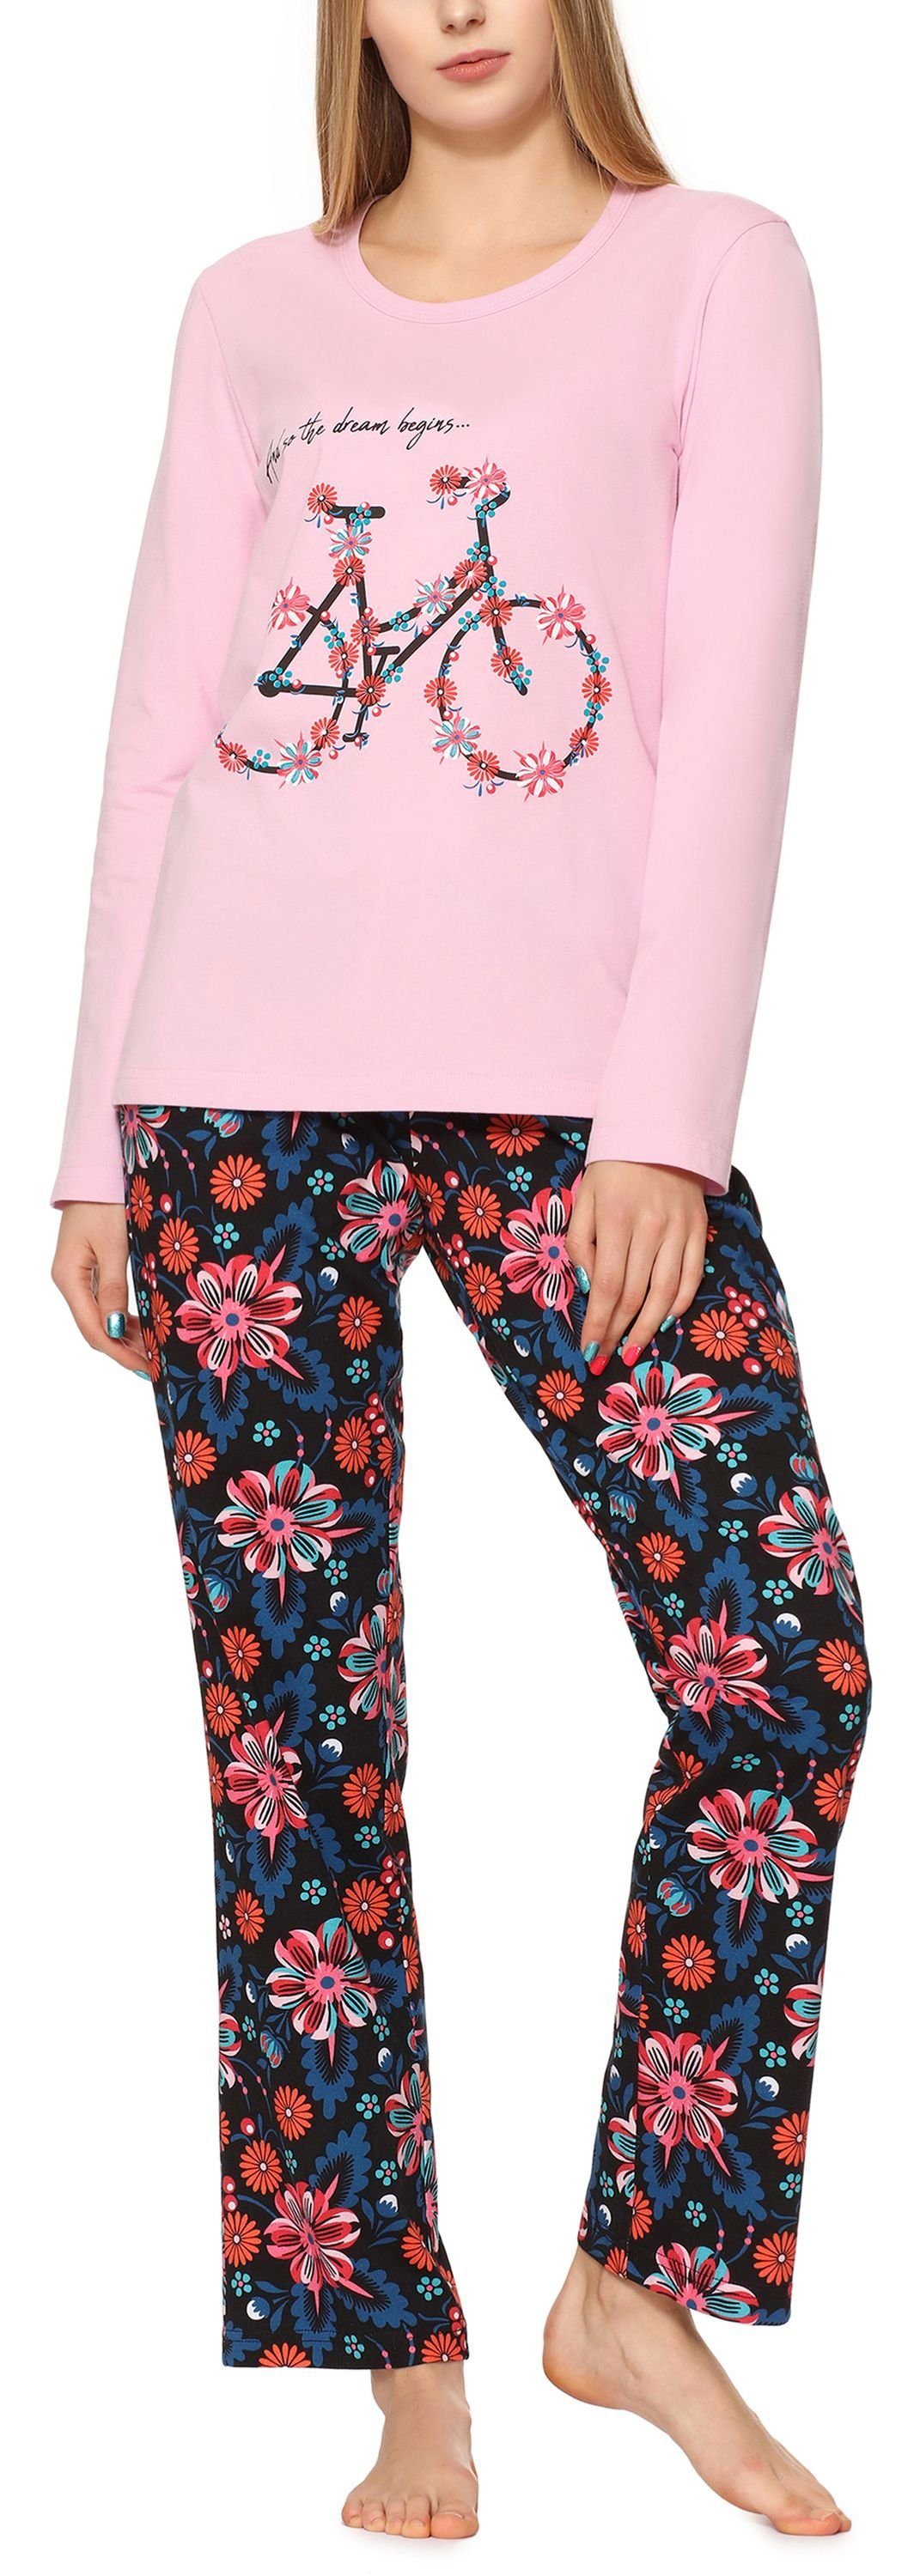 MS10-169 Damen Schlafanzug Licht Schlafanzug Merry Rosa/Blumen2 Style